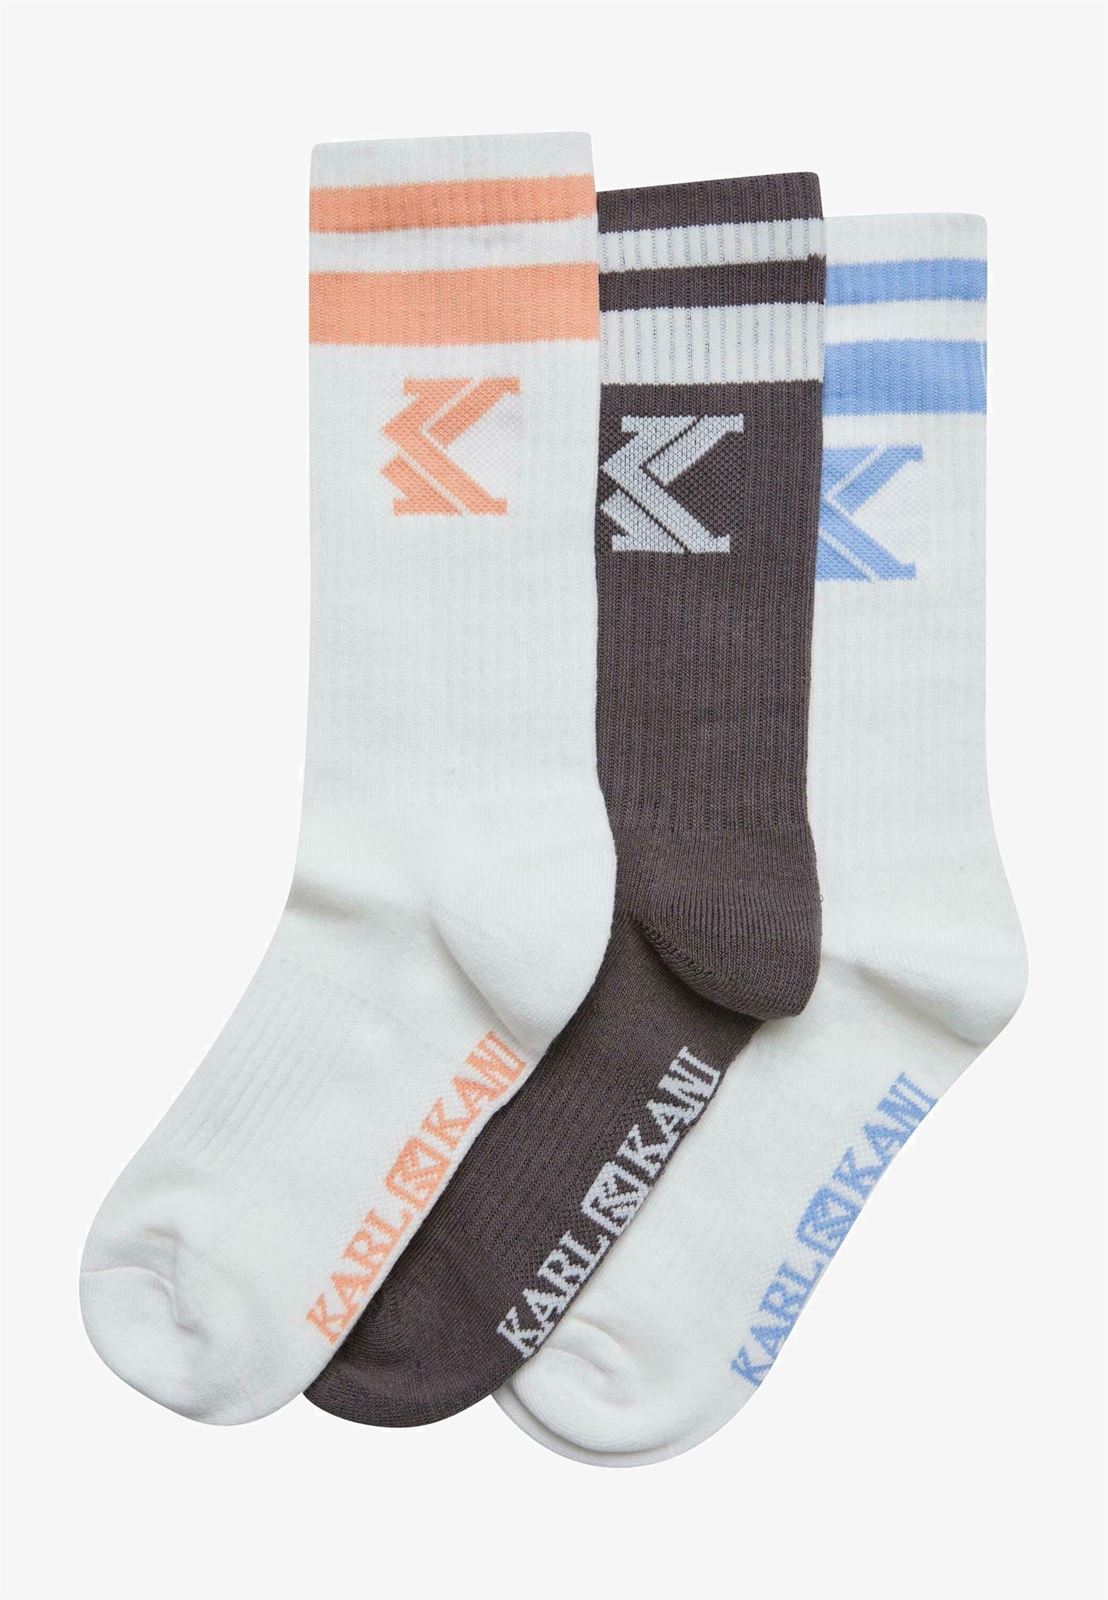 Calcetines Karl Kani KA241-033-1 3013306 Ogk College 3 pack socks multicolor - Imagen 1